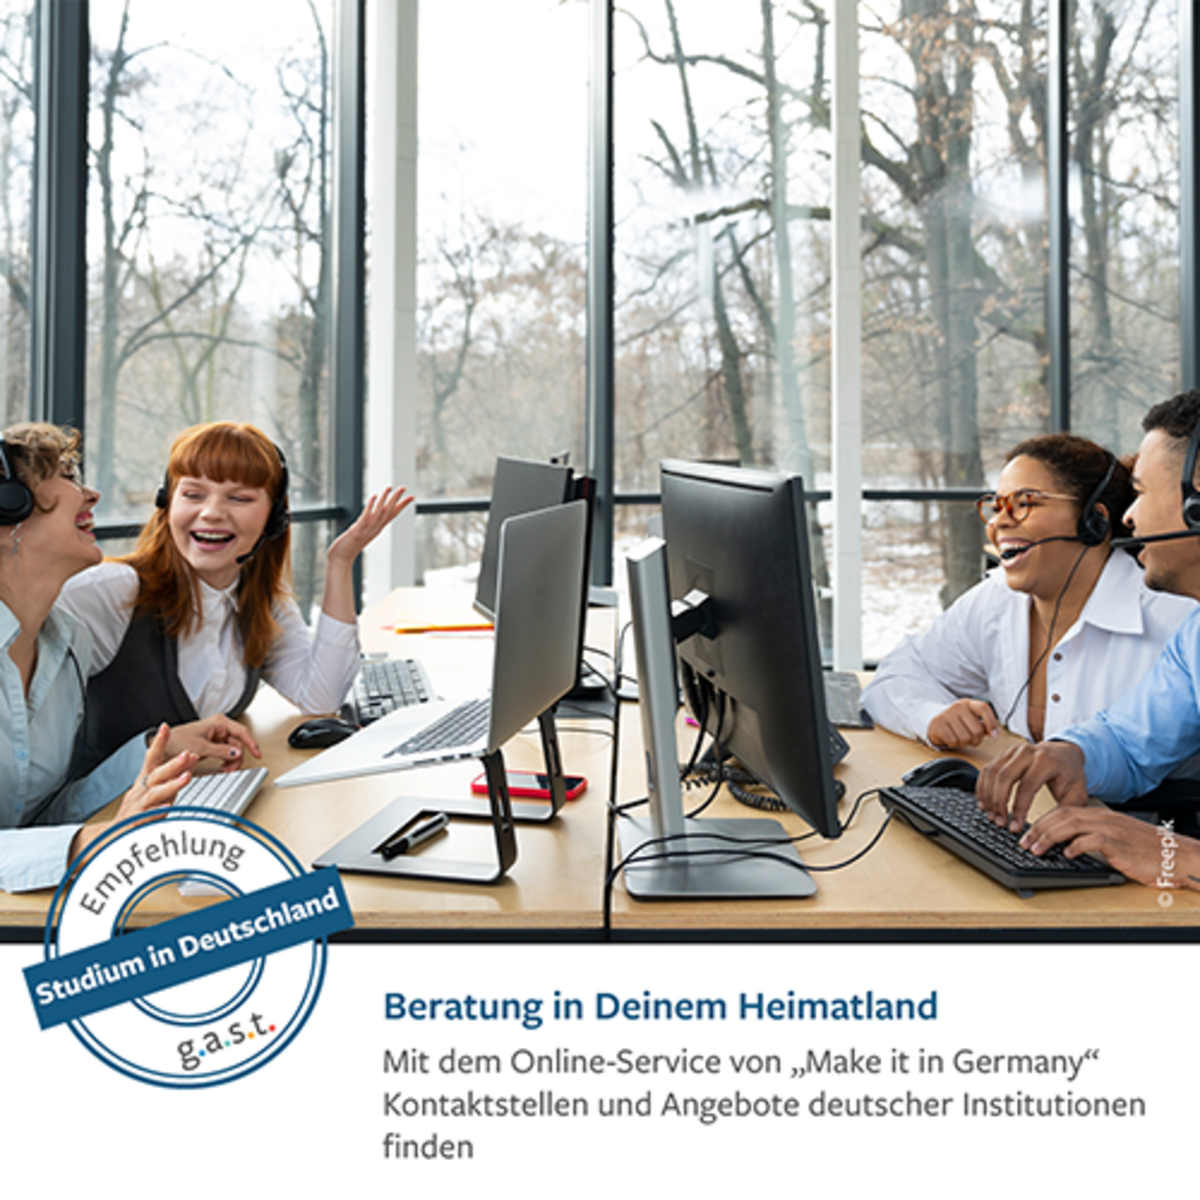 Imagebild zum Thema "Studium in Deutschland": Vier junge Internationals sitzen an einem Tisch vor jeweils einem Bildschirmarbeitsplatz. Sie tragen Hemd bzw. Bluse und lachen. Im Hintergrund öffnet sich vor einer Glasfront der Bild in einen spätherbstlichen winterlichen Wald. Auf dem Waldboden liegt Schnee.